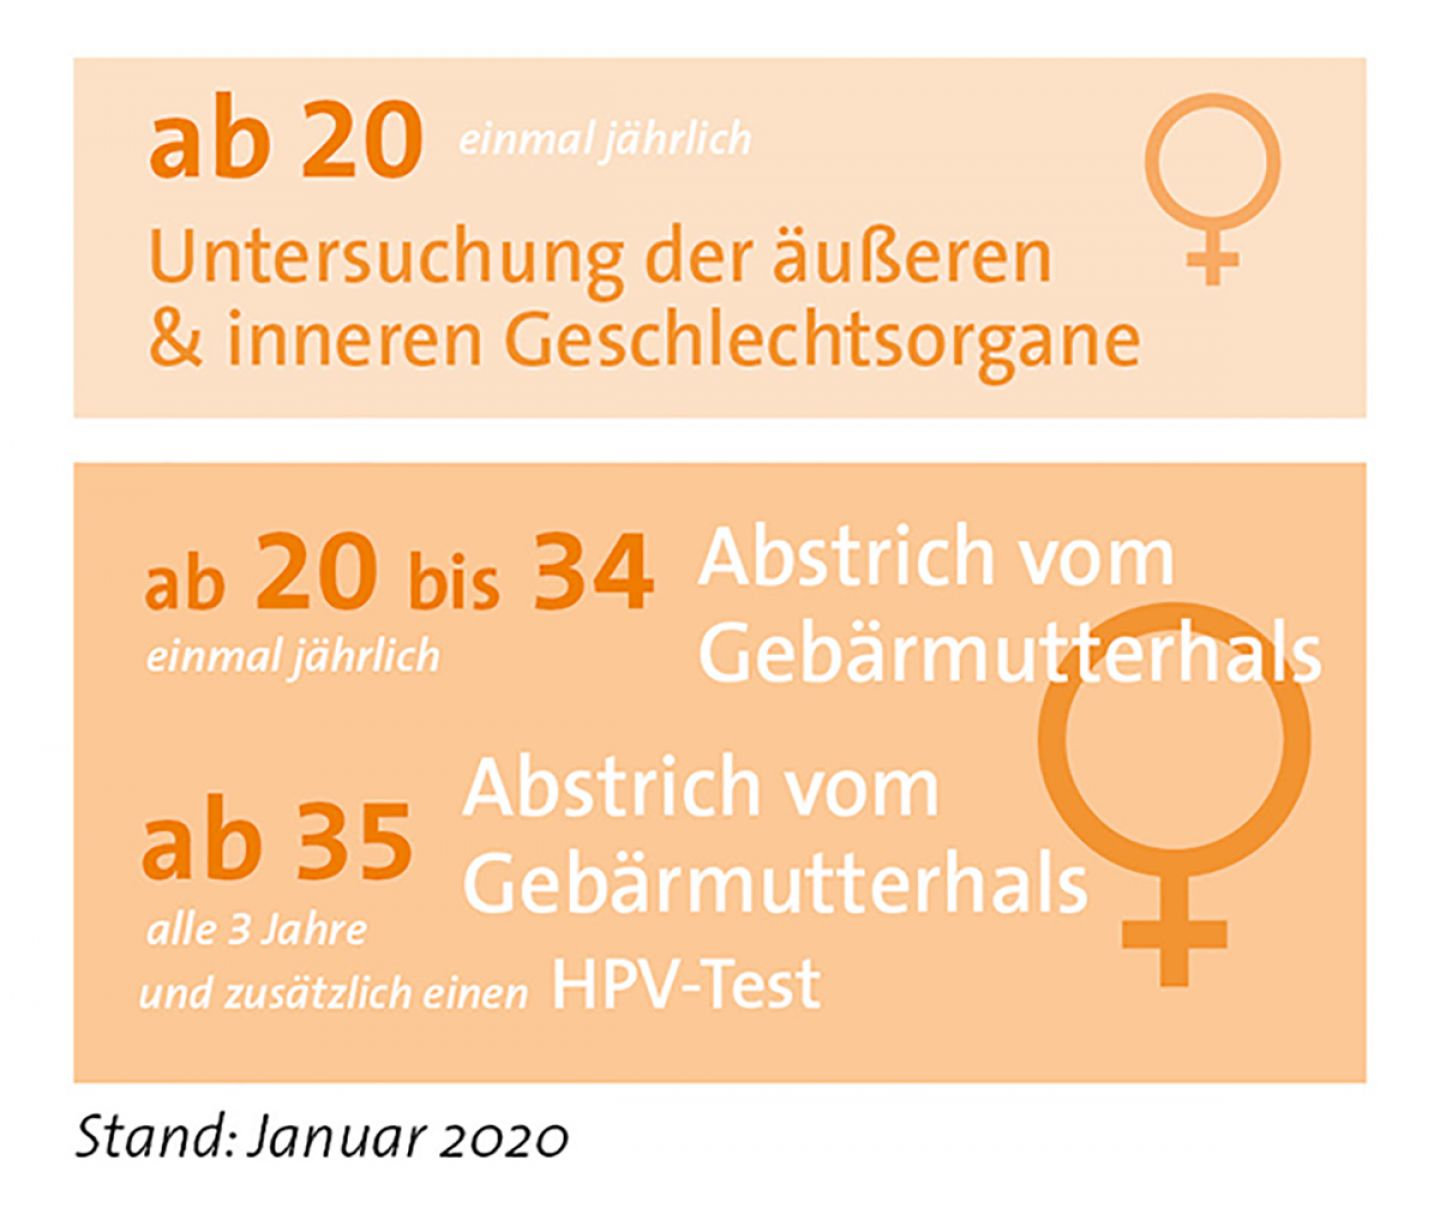 Regelungen zur Früherkennung von Gebärmutterhalskrebs ab Januar 2020 © Krebsinformationsdienst, Deutsches Krebsforschungszentrum